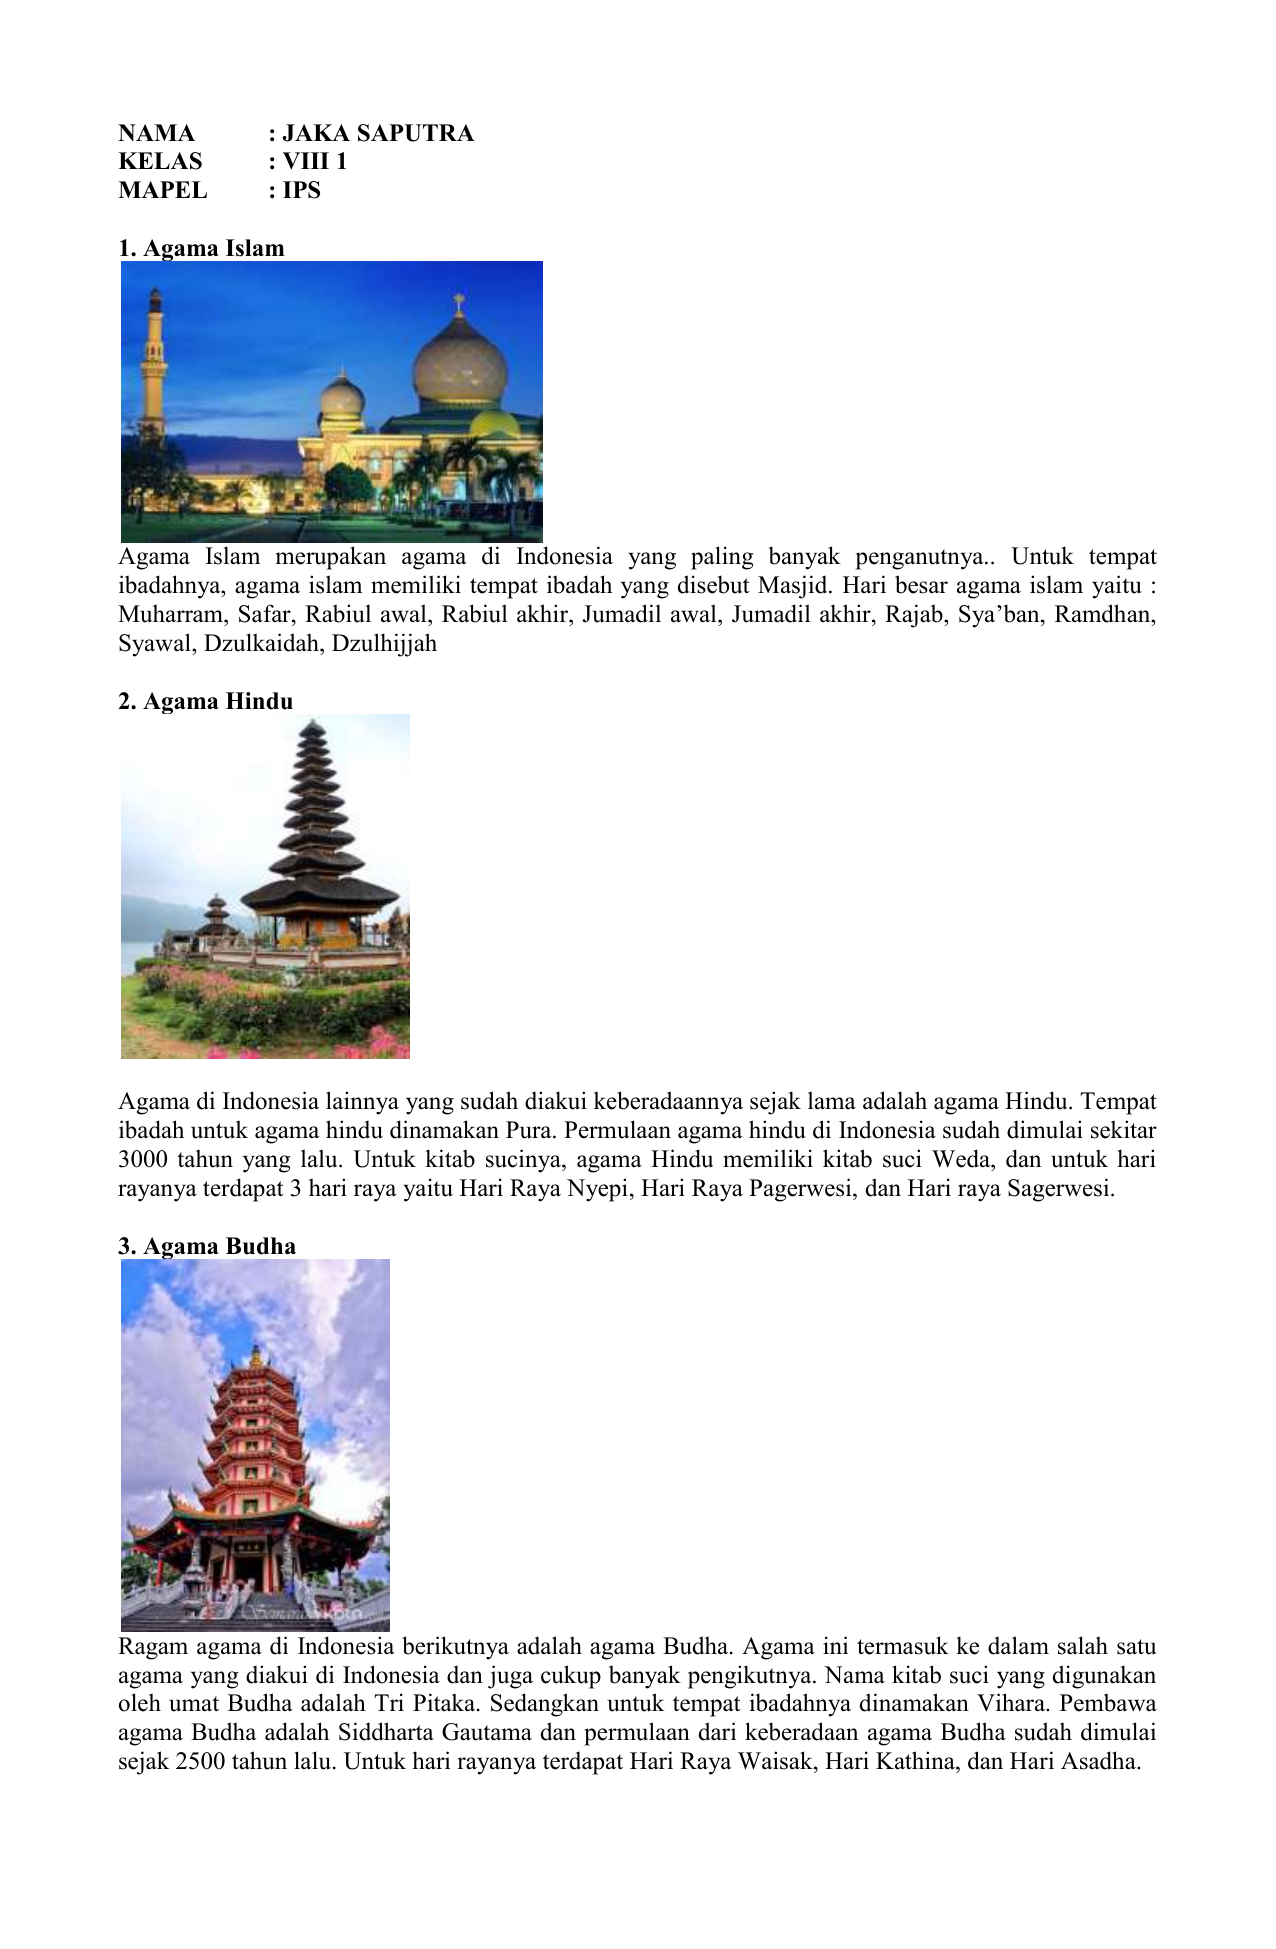 Gambar Tempat Ibadah Budha Dan Hindu